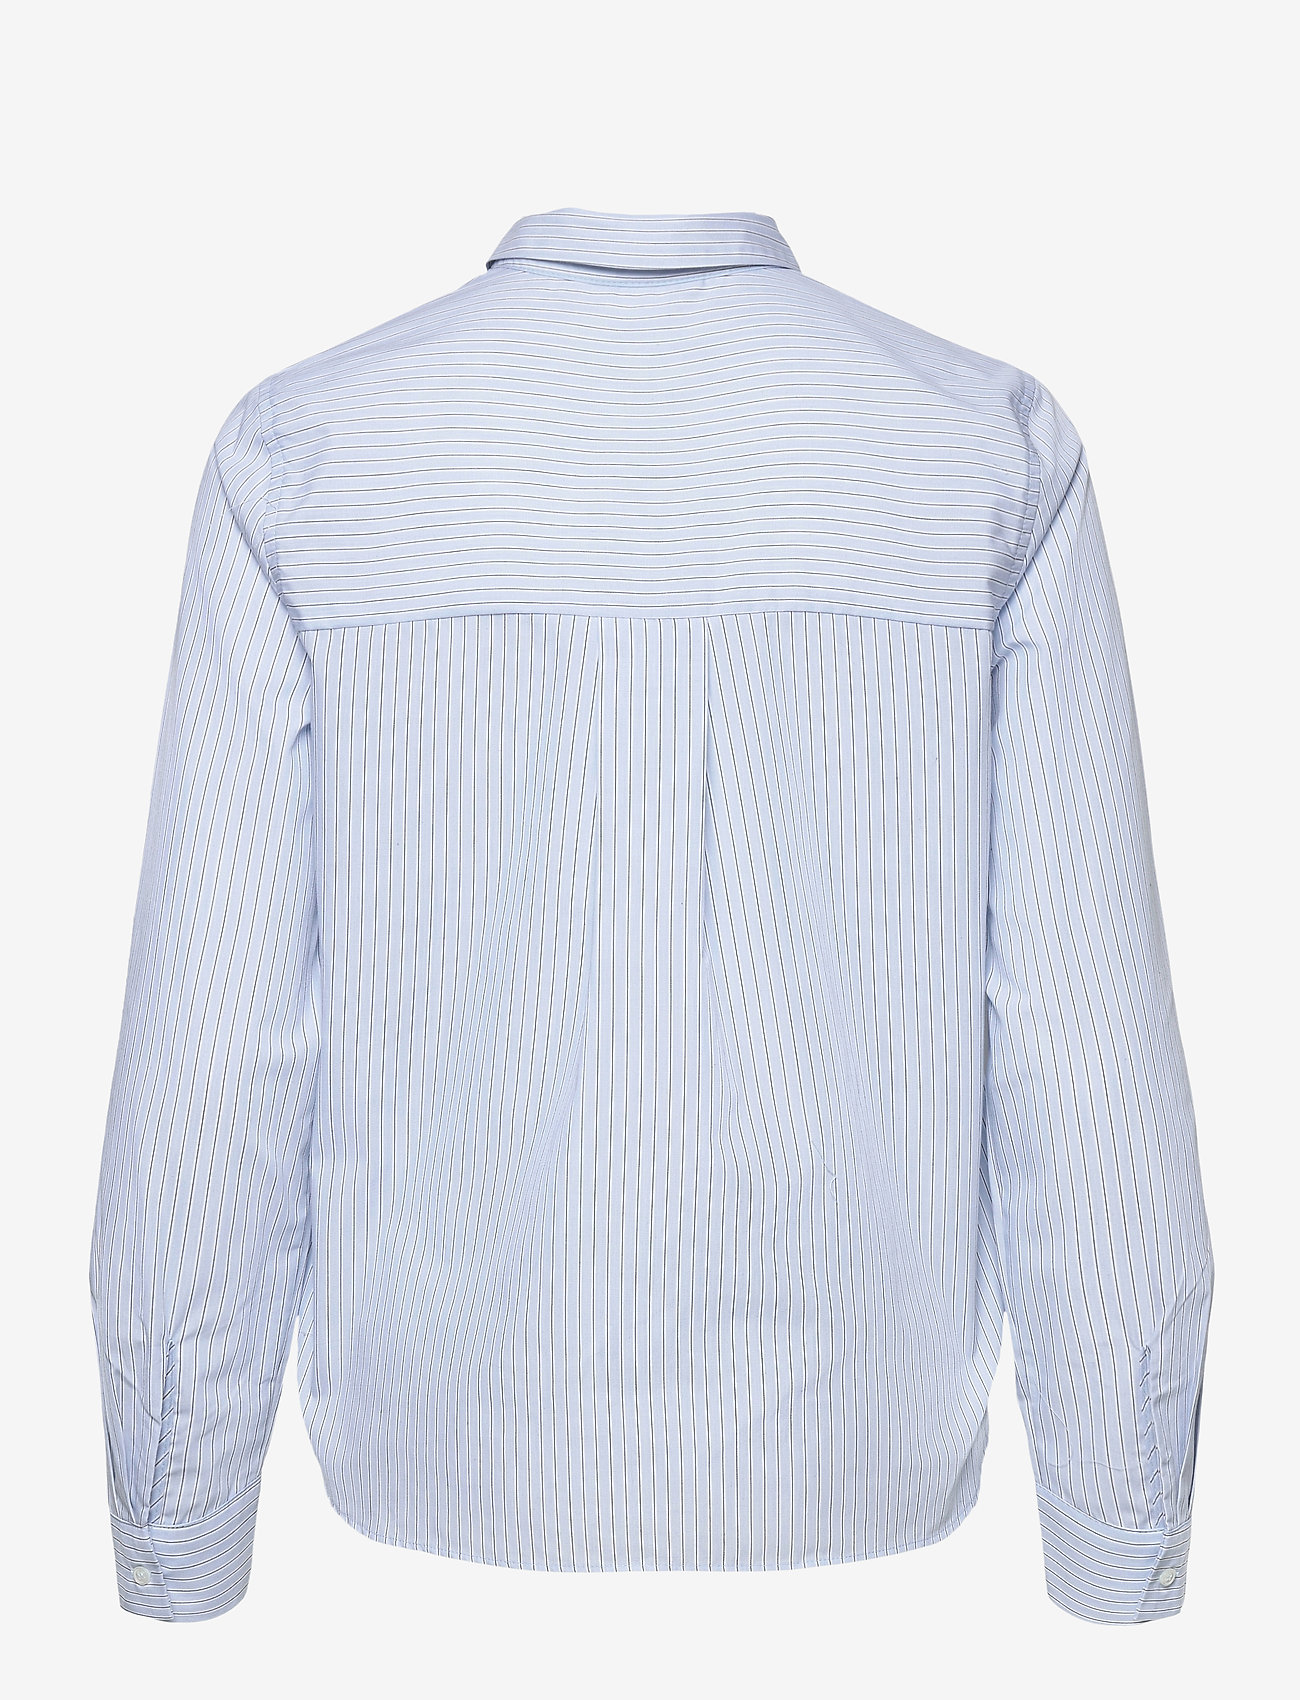 mbyM - Octavio - langærmede skjorter - blue white black stripe - 1